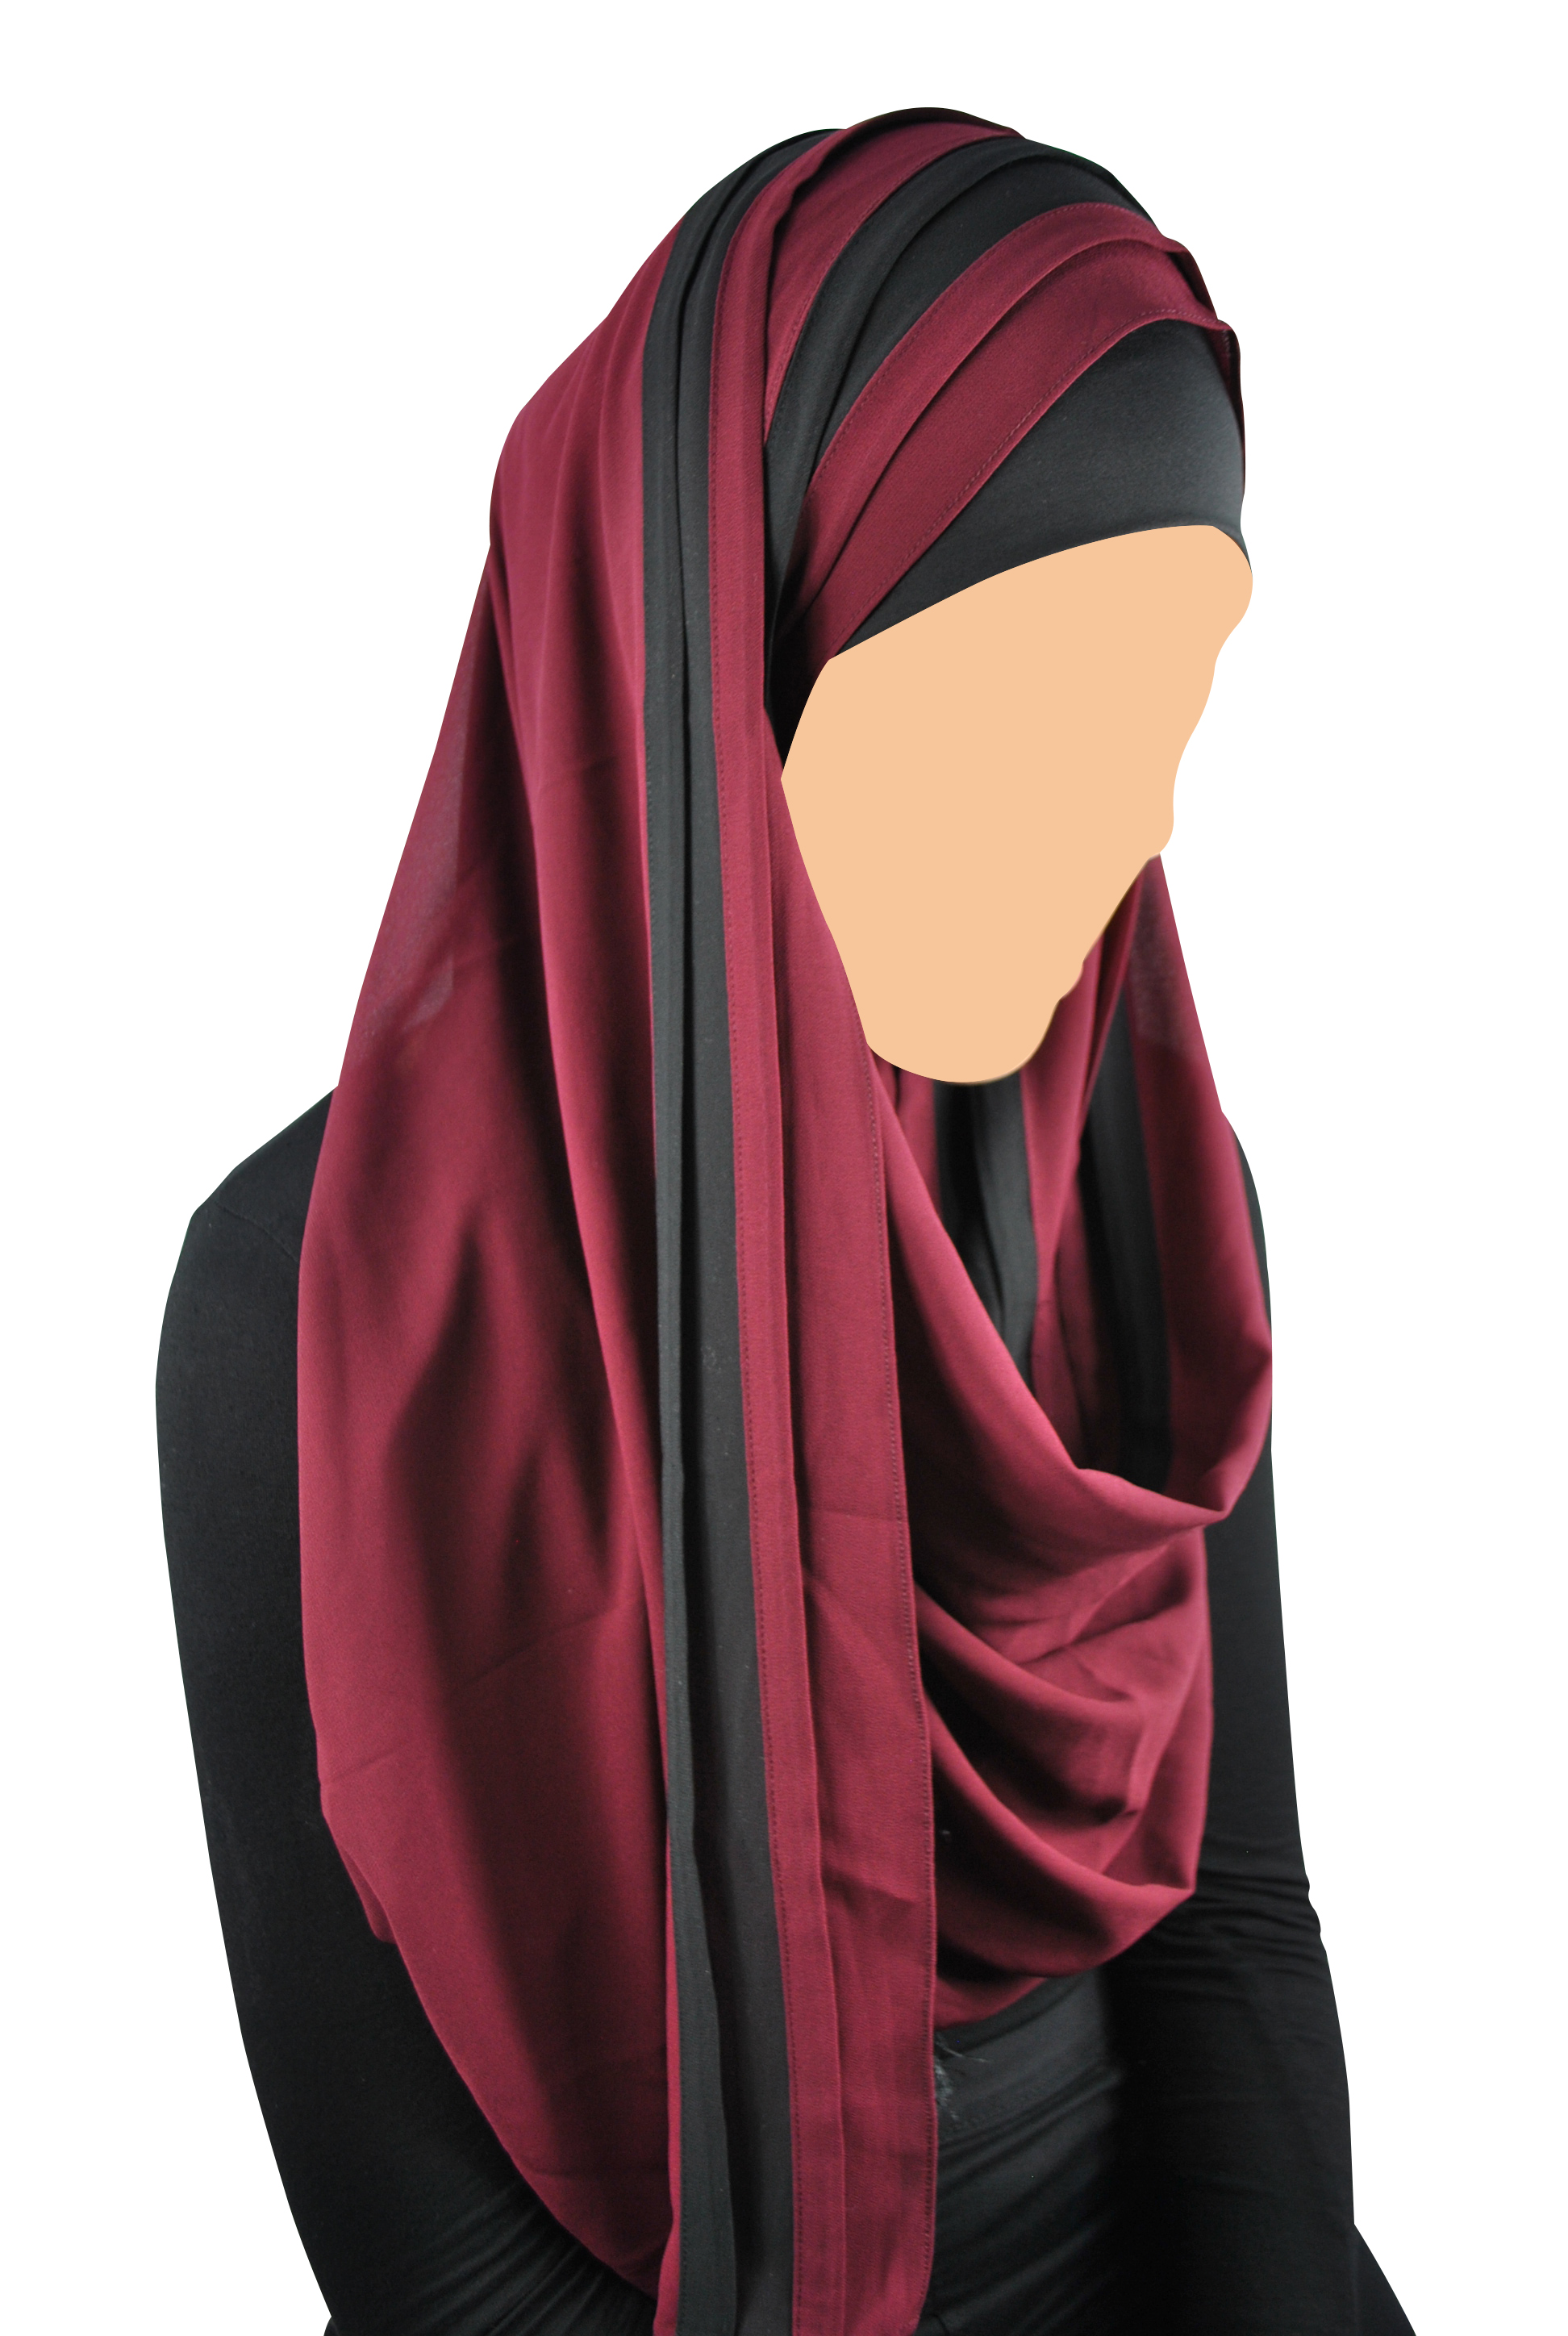 Pourquoi Porter Le Hijab Cest Le Sujet De Cet Article Sur Les Idées Reçues Concernant Le Hijab 